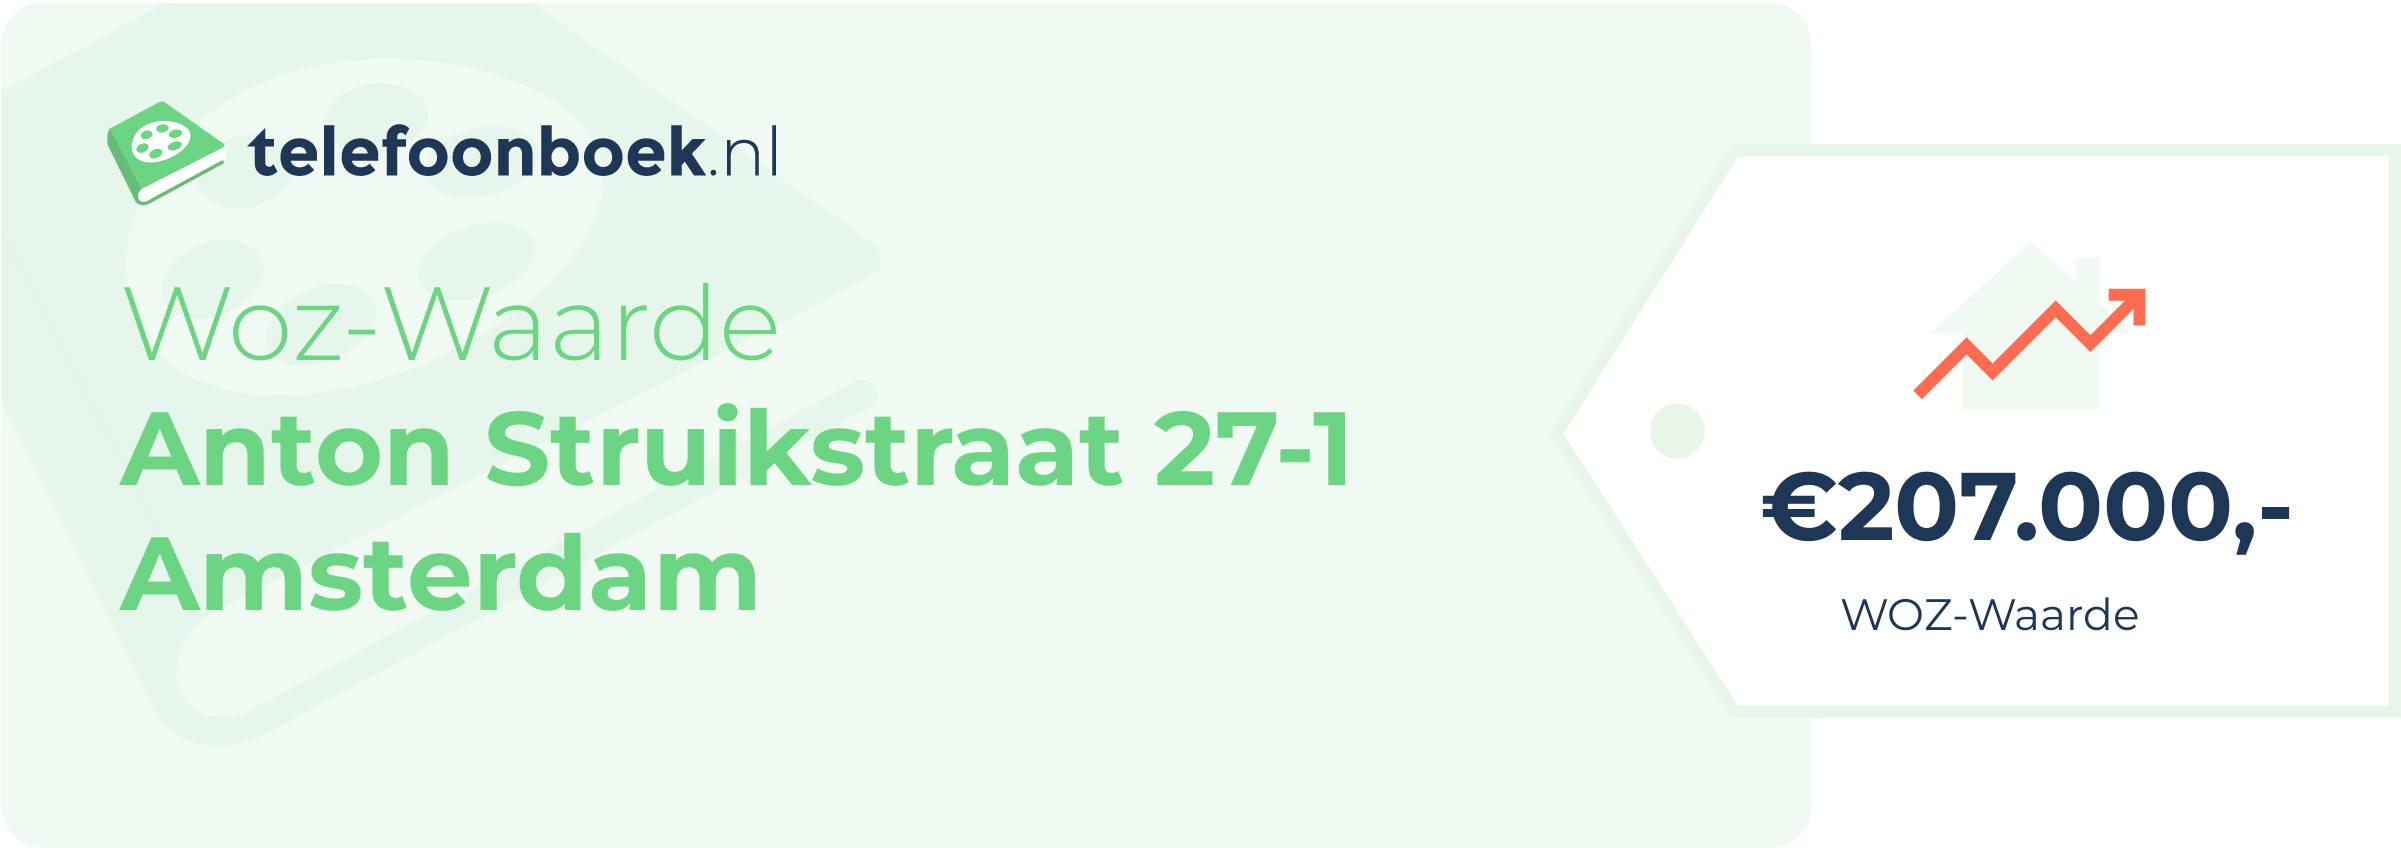 WOZ-waarde Anton Struikstraat 27-1 Amsterdam